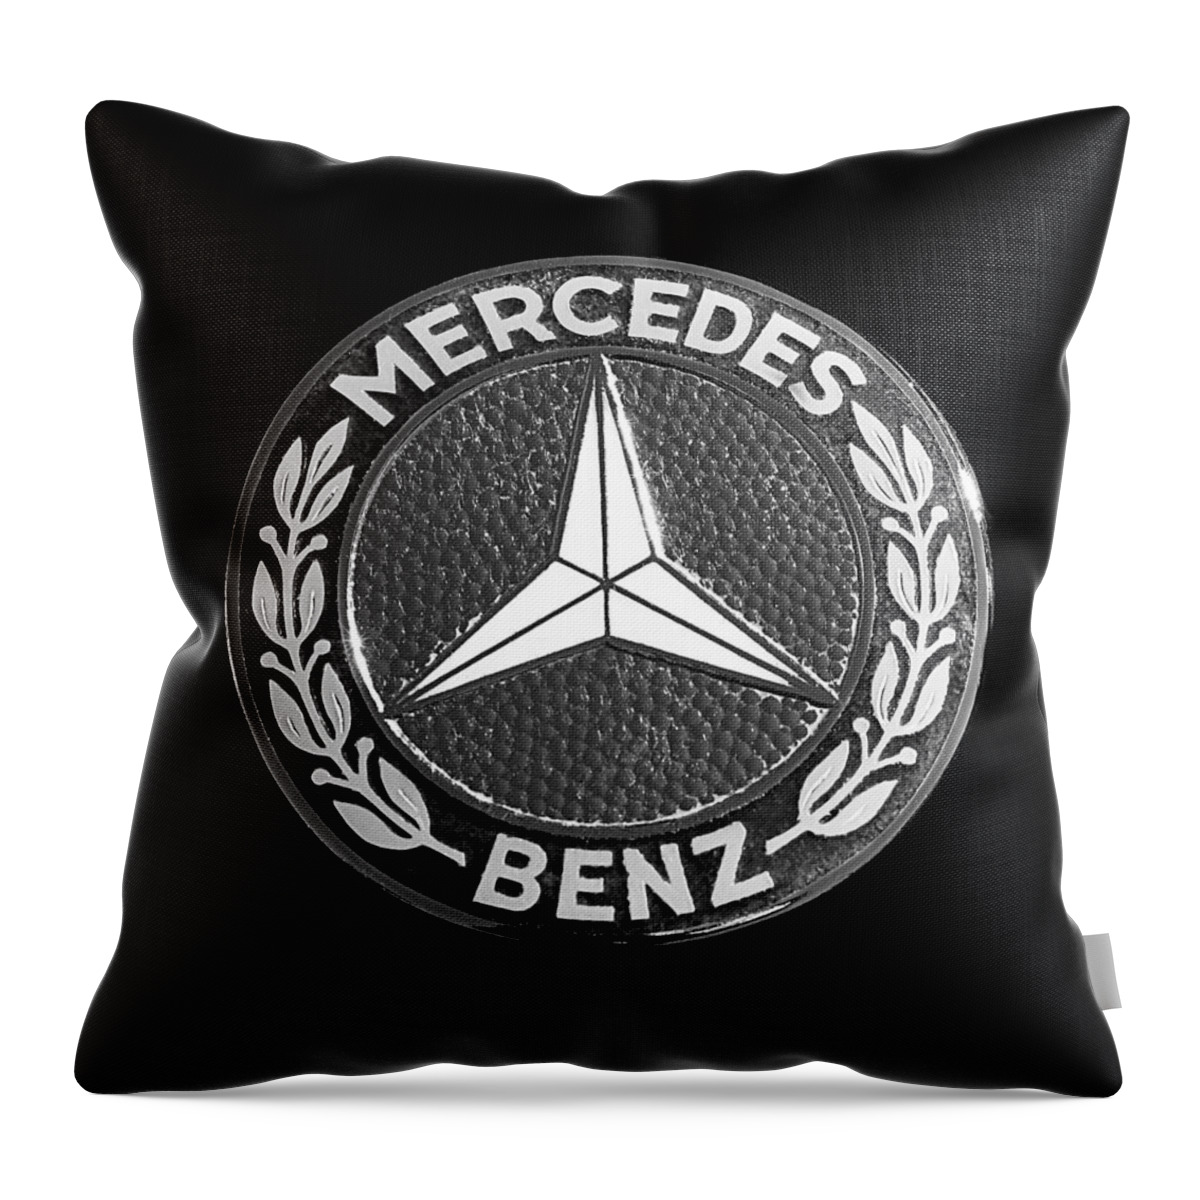 Mercedes-benz 190sl Emblem Throw Pillow featuring the photograph Mercedes-Benz 190SL Emblem by Jill Reger